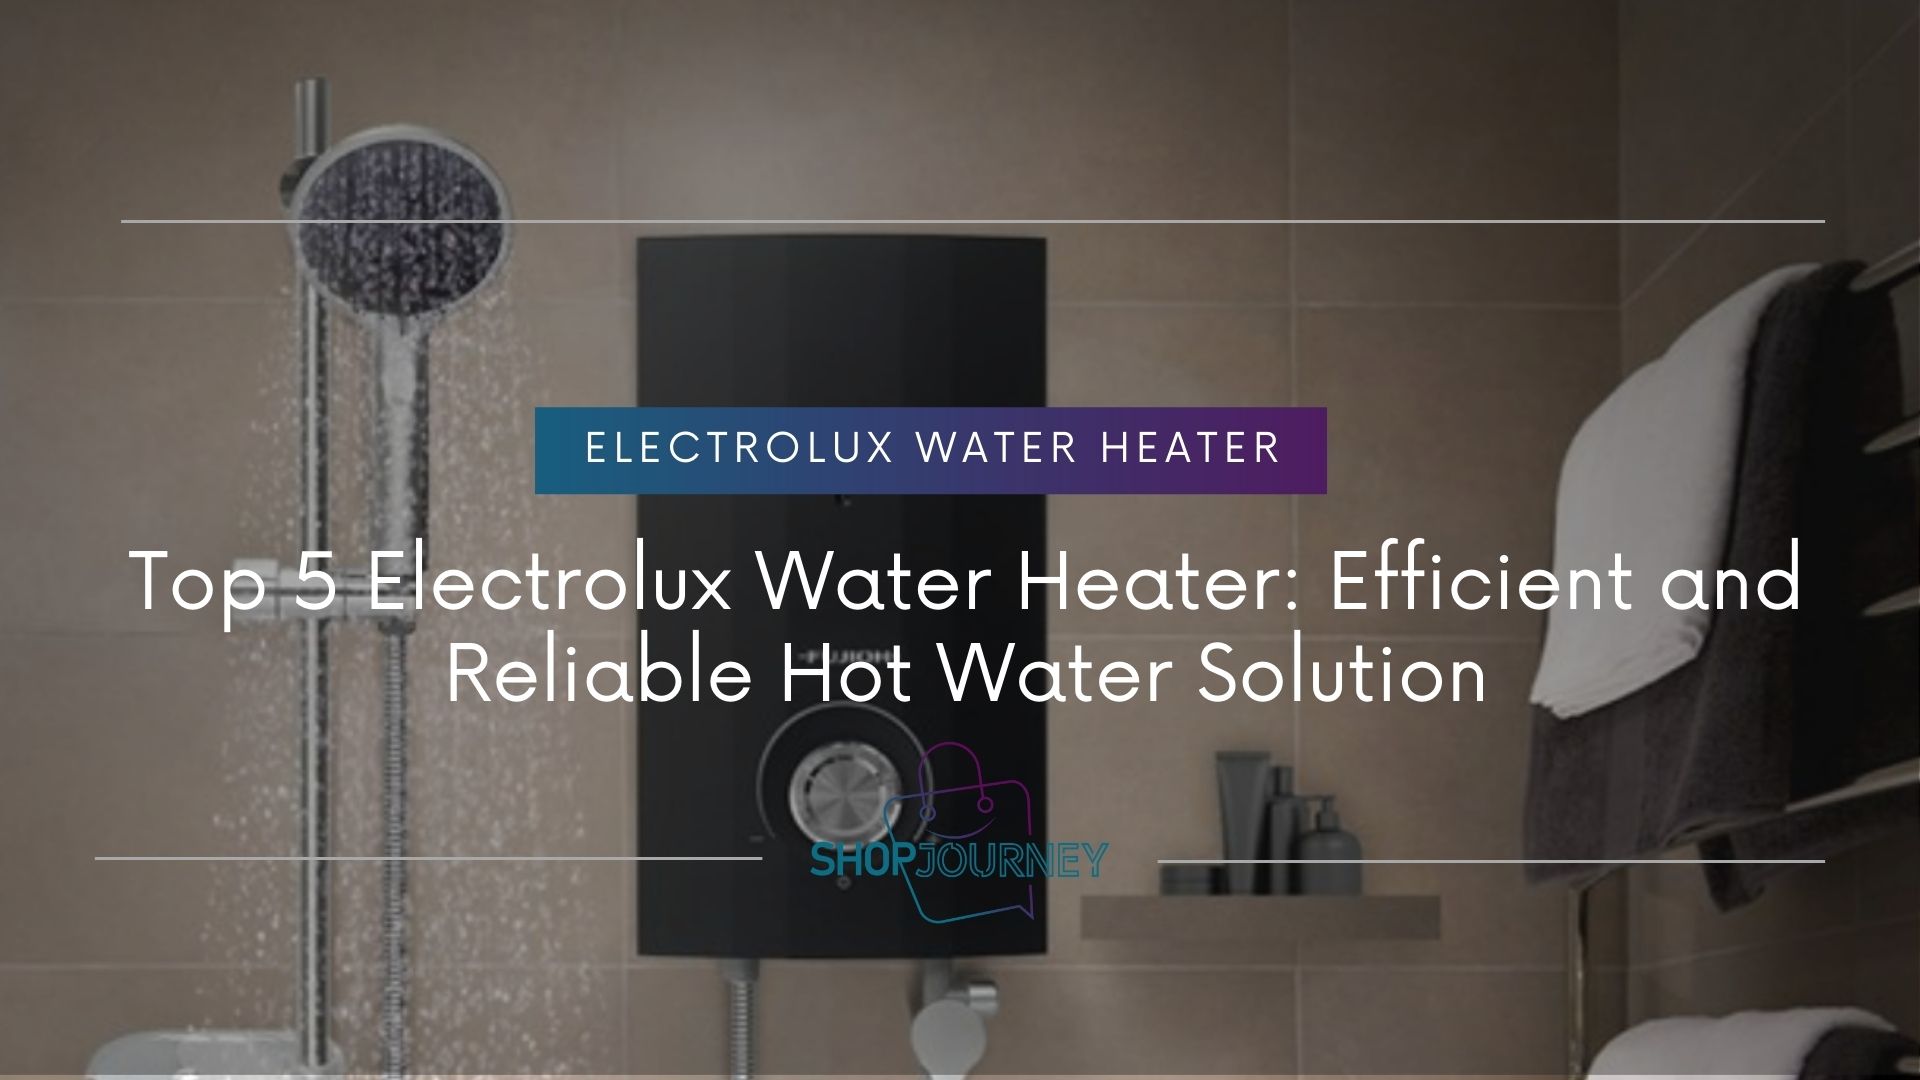 Electrolux water heater - Shop journey